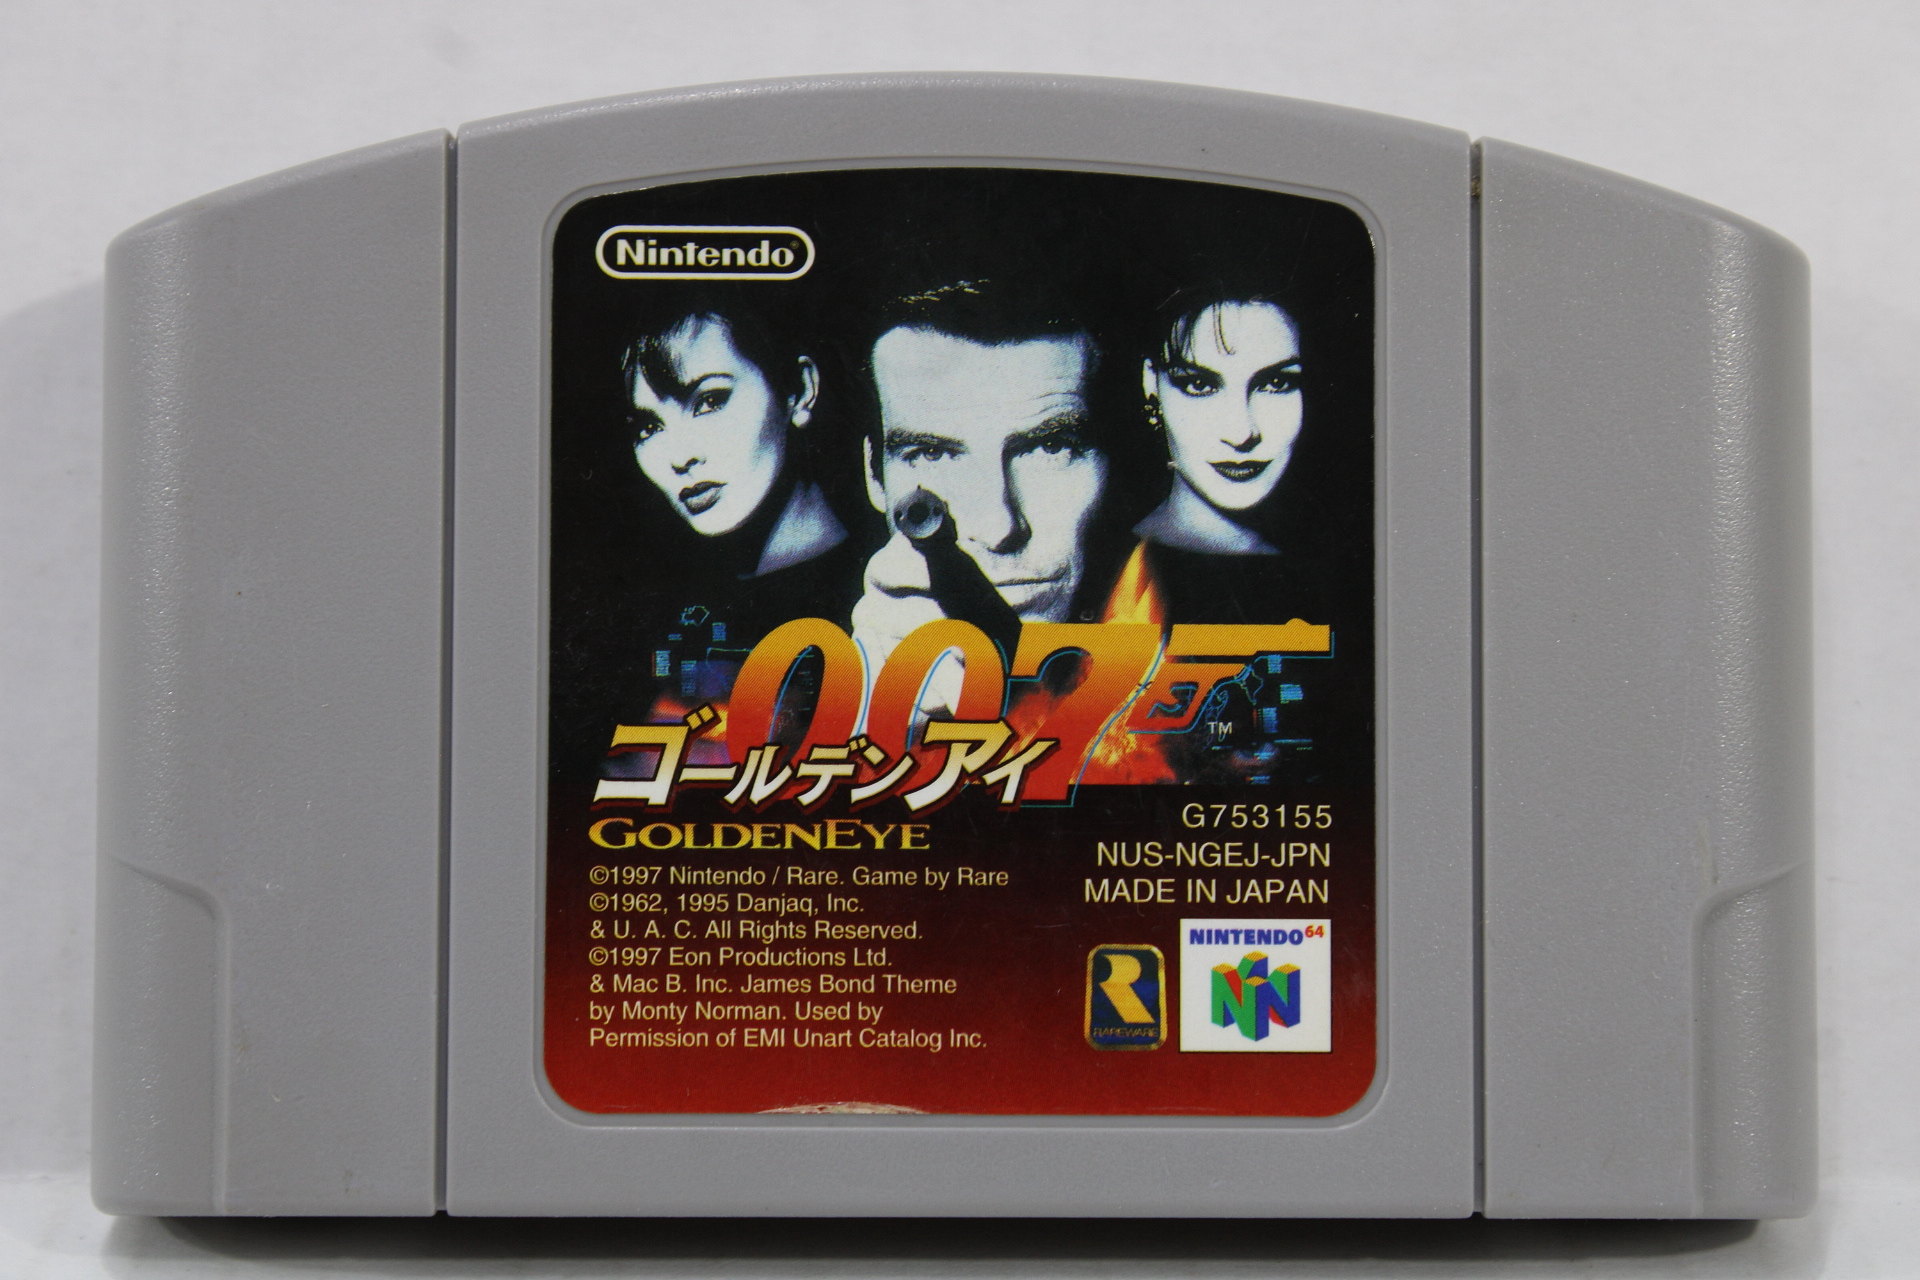 007 GoldenEye Nintendo 64 N64 Game For Sale